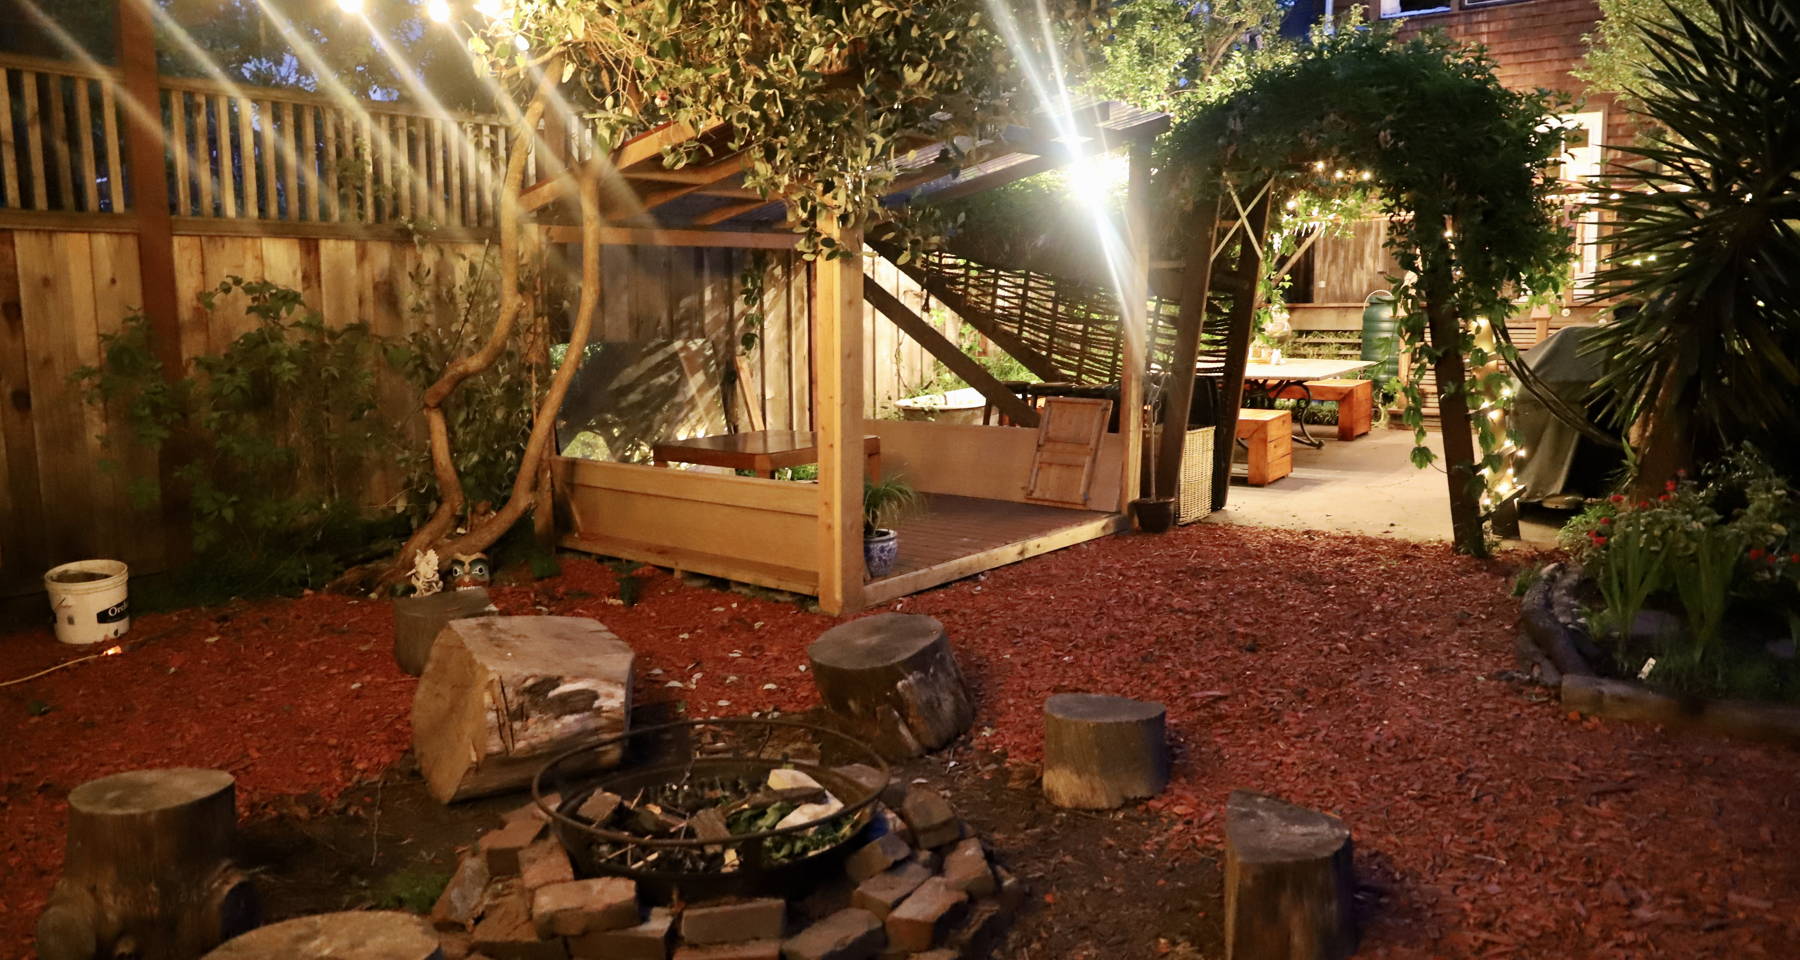 A Blissful Night in our Berkeley Backyard 